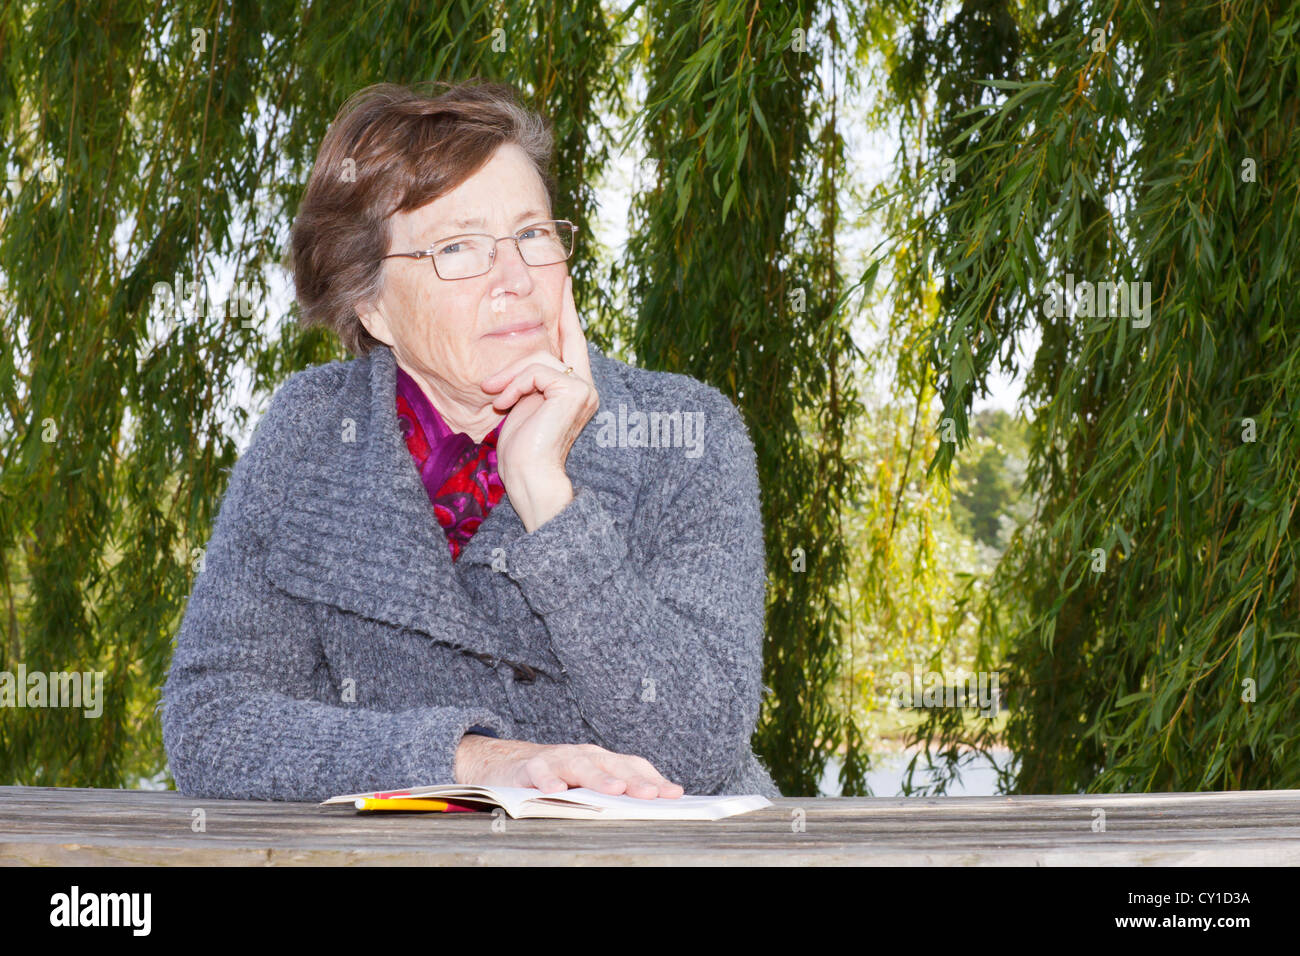 Senior woman reading outdoors. Stock Photo